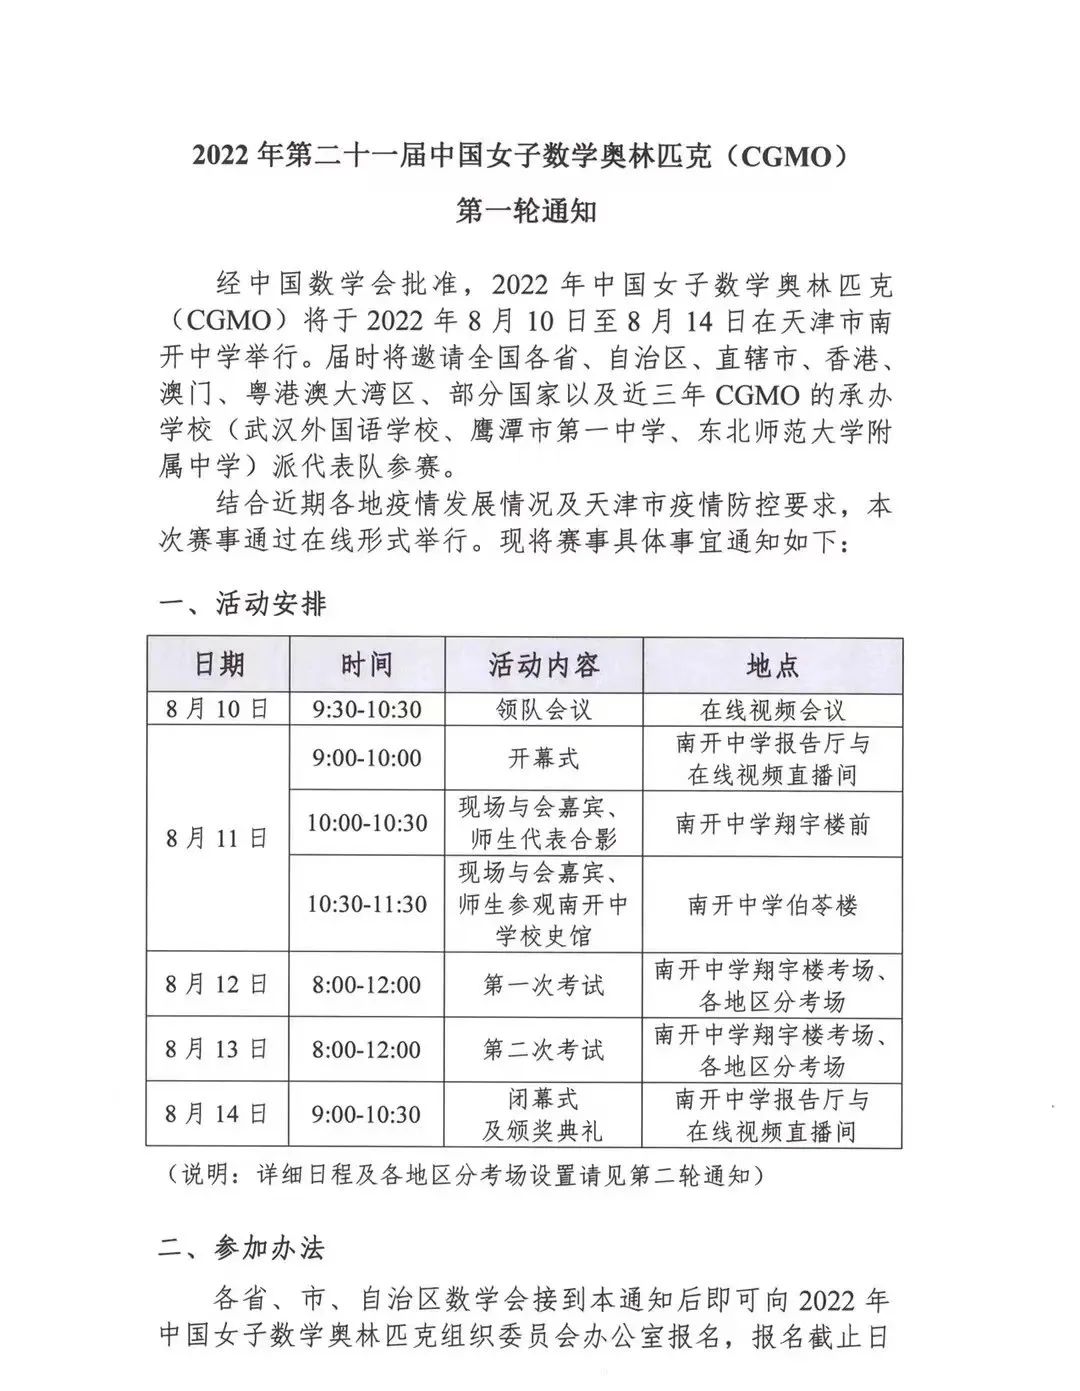 2022年第21届中国女子数学奥林匹克（CGMO）第一轮通知发布